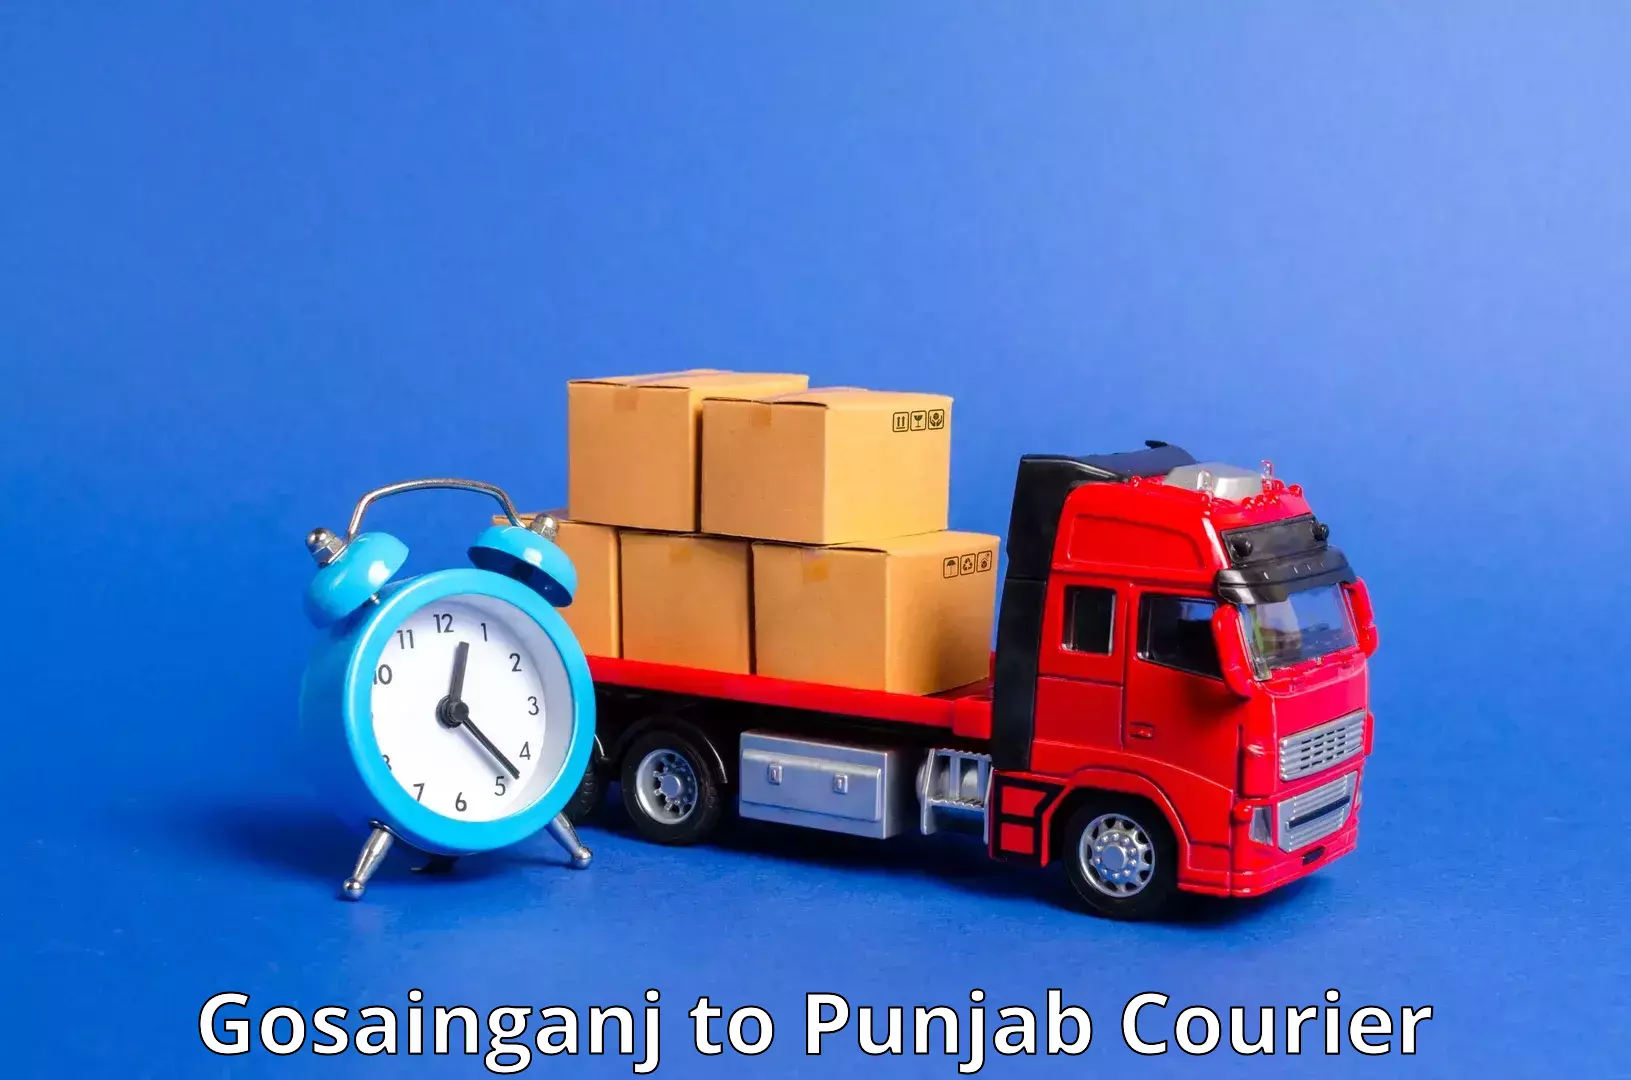 Courier service partnerships Gosainganj to Central University of Punjab Bathinda